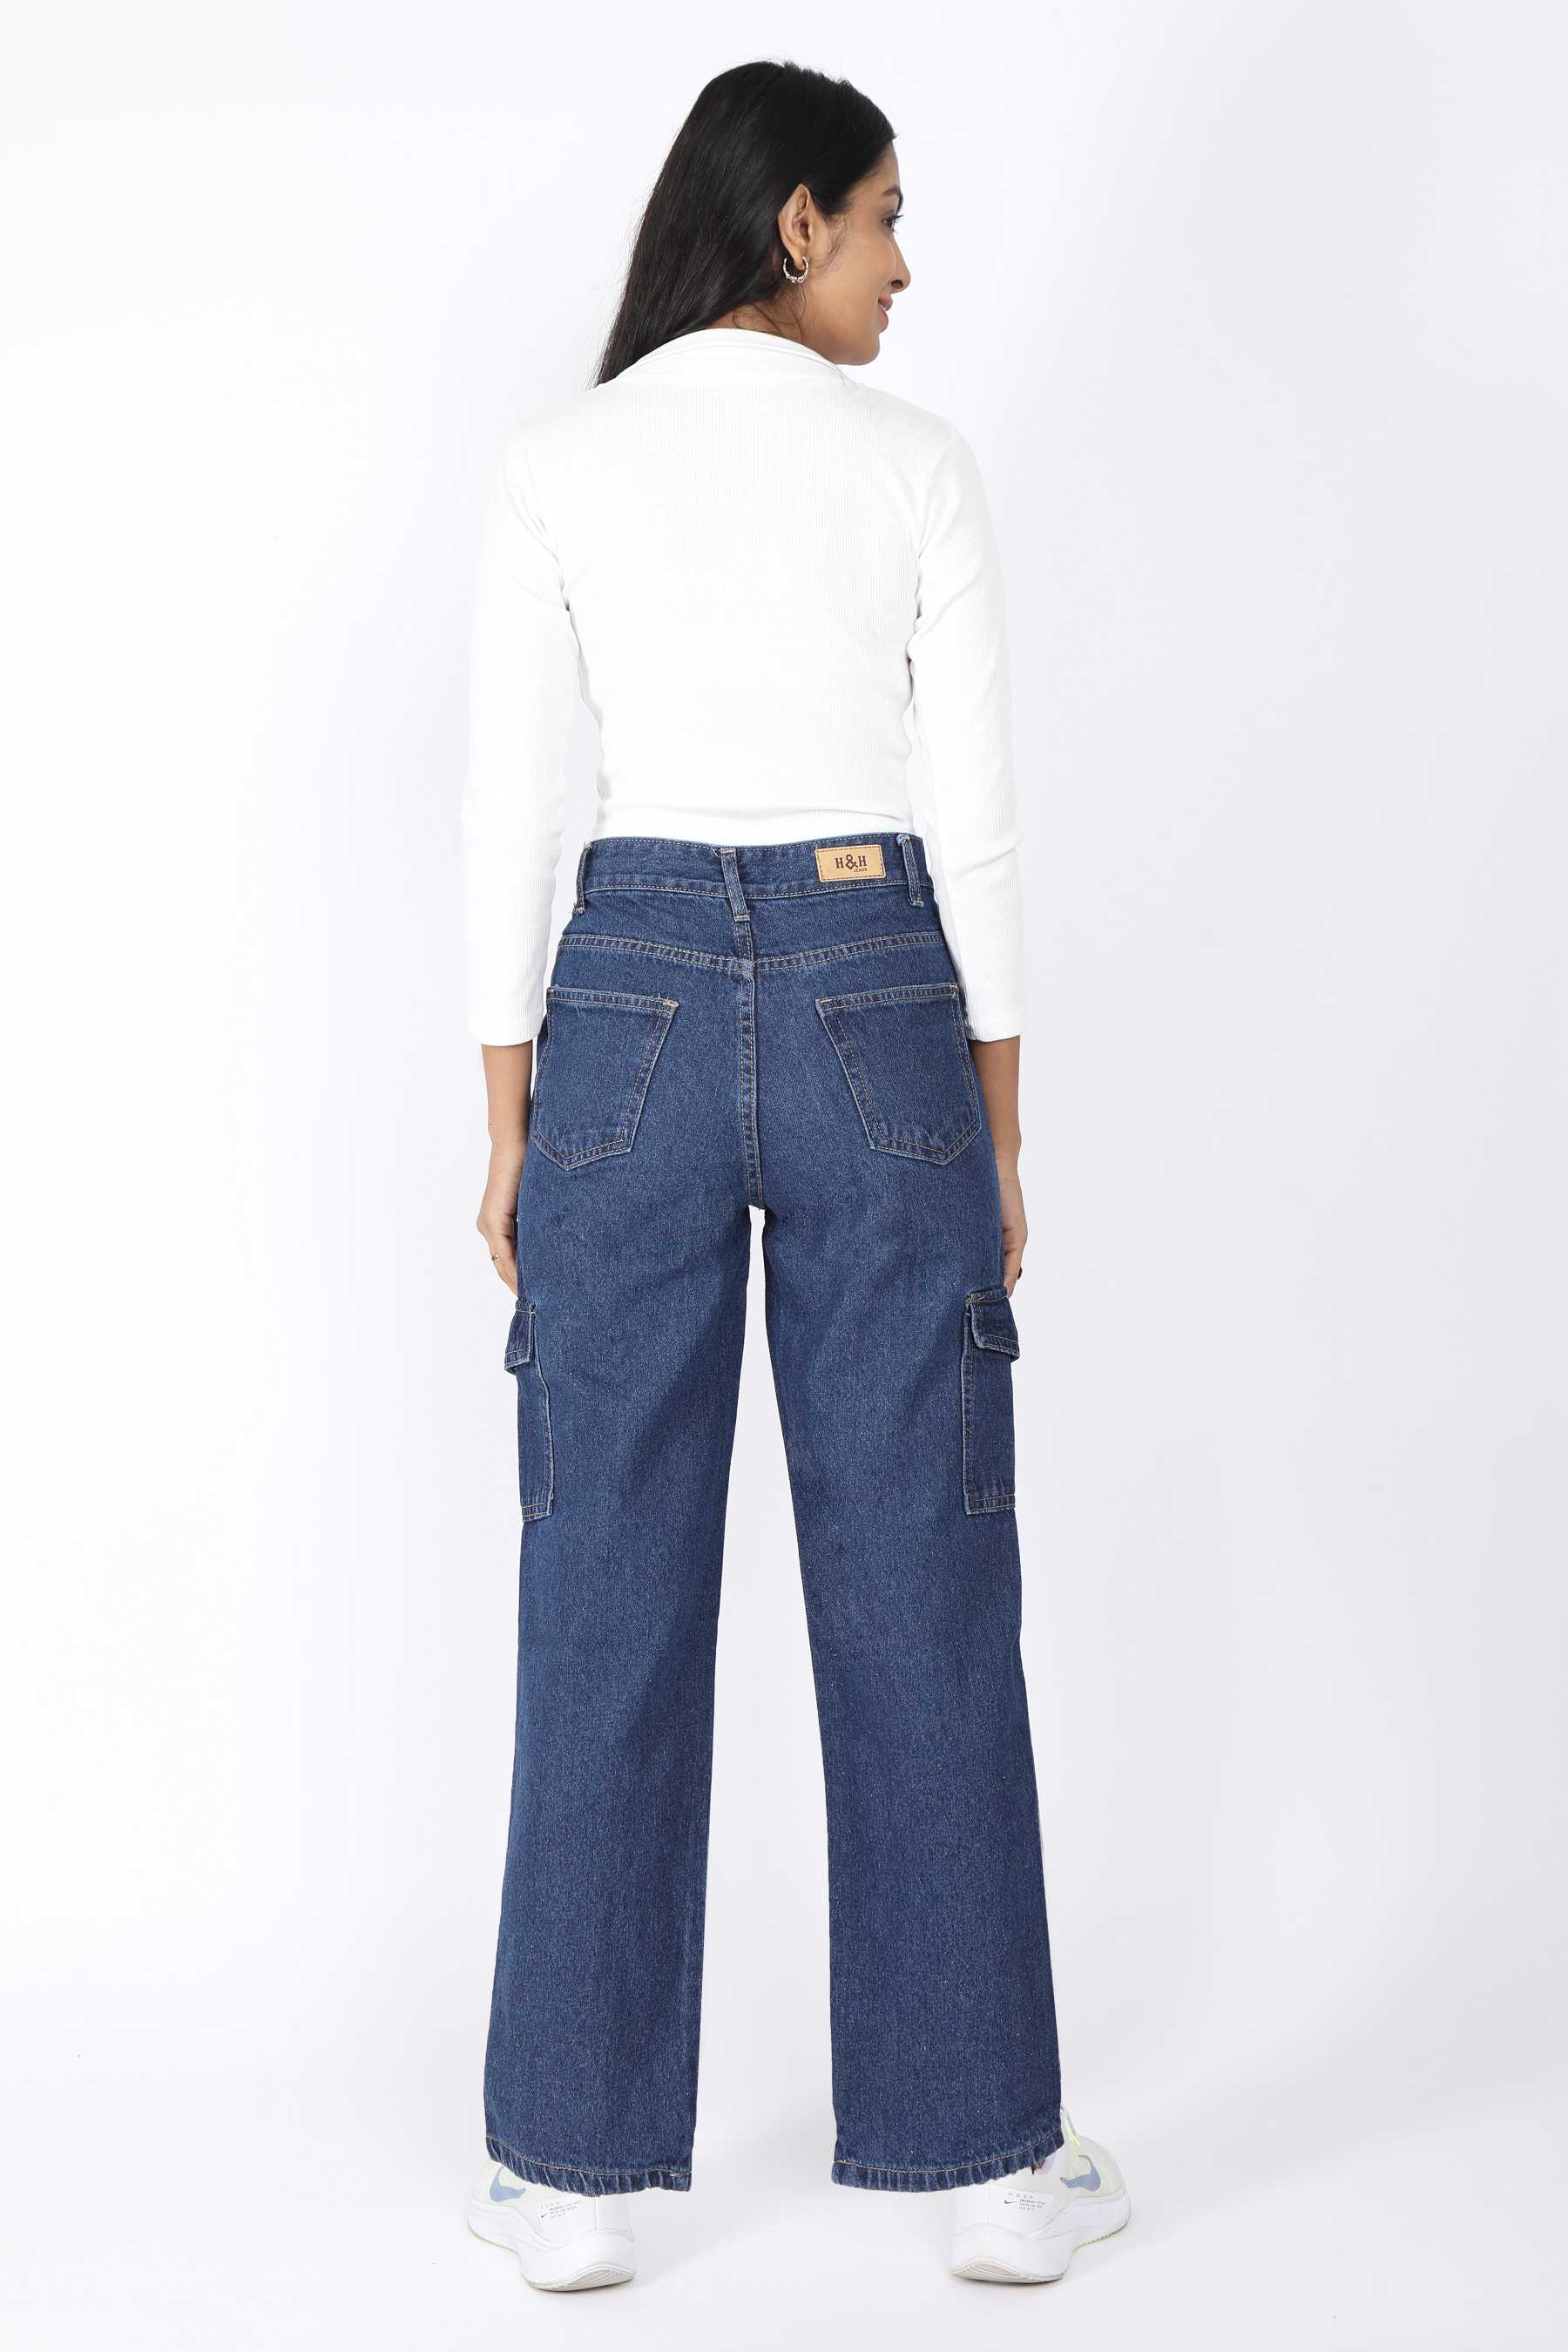 Buy 6 Pocket Denim Cargo High Waist Jeans For Women